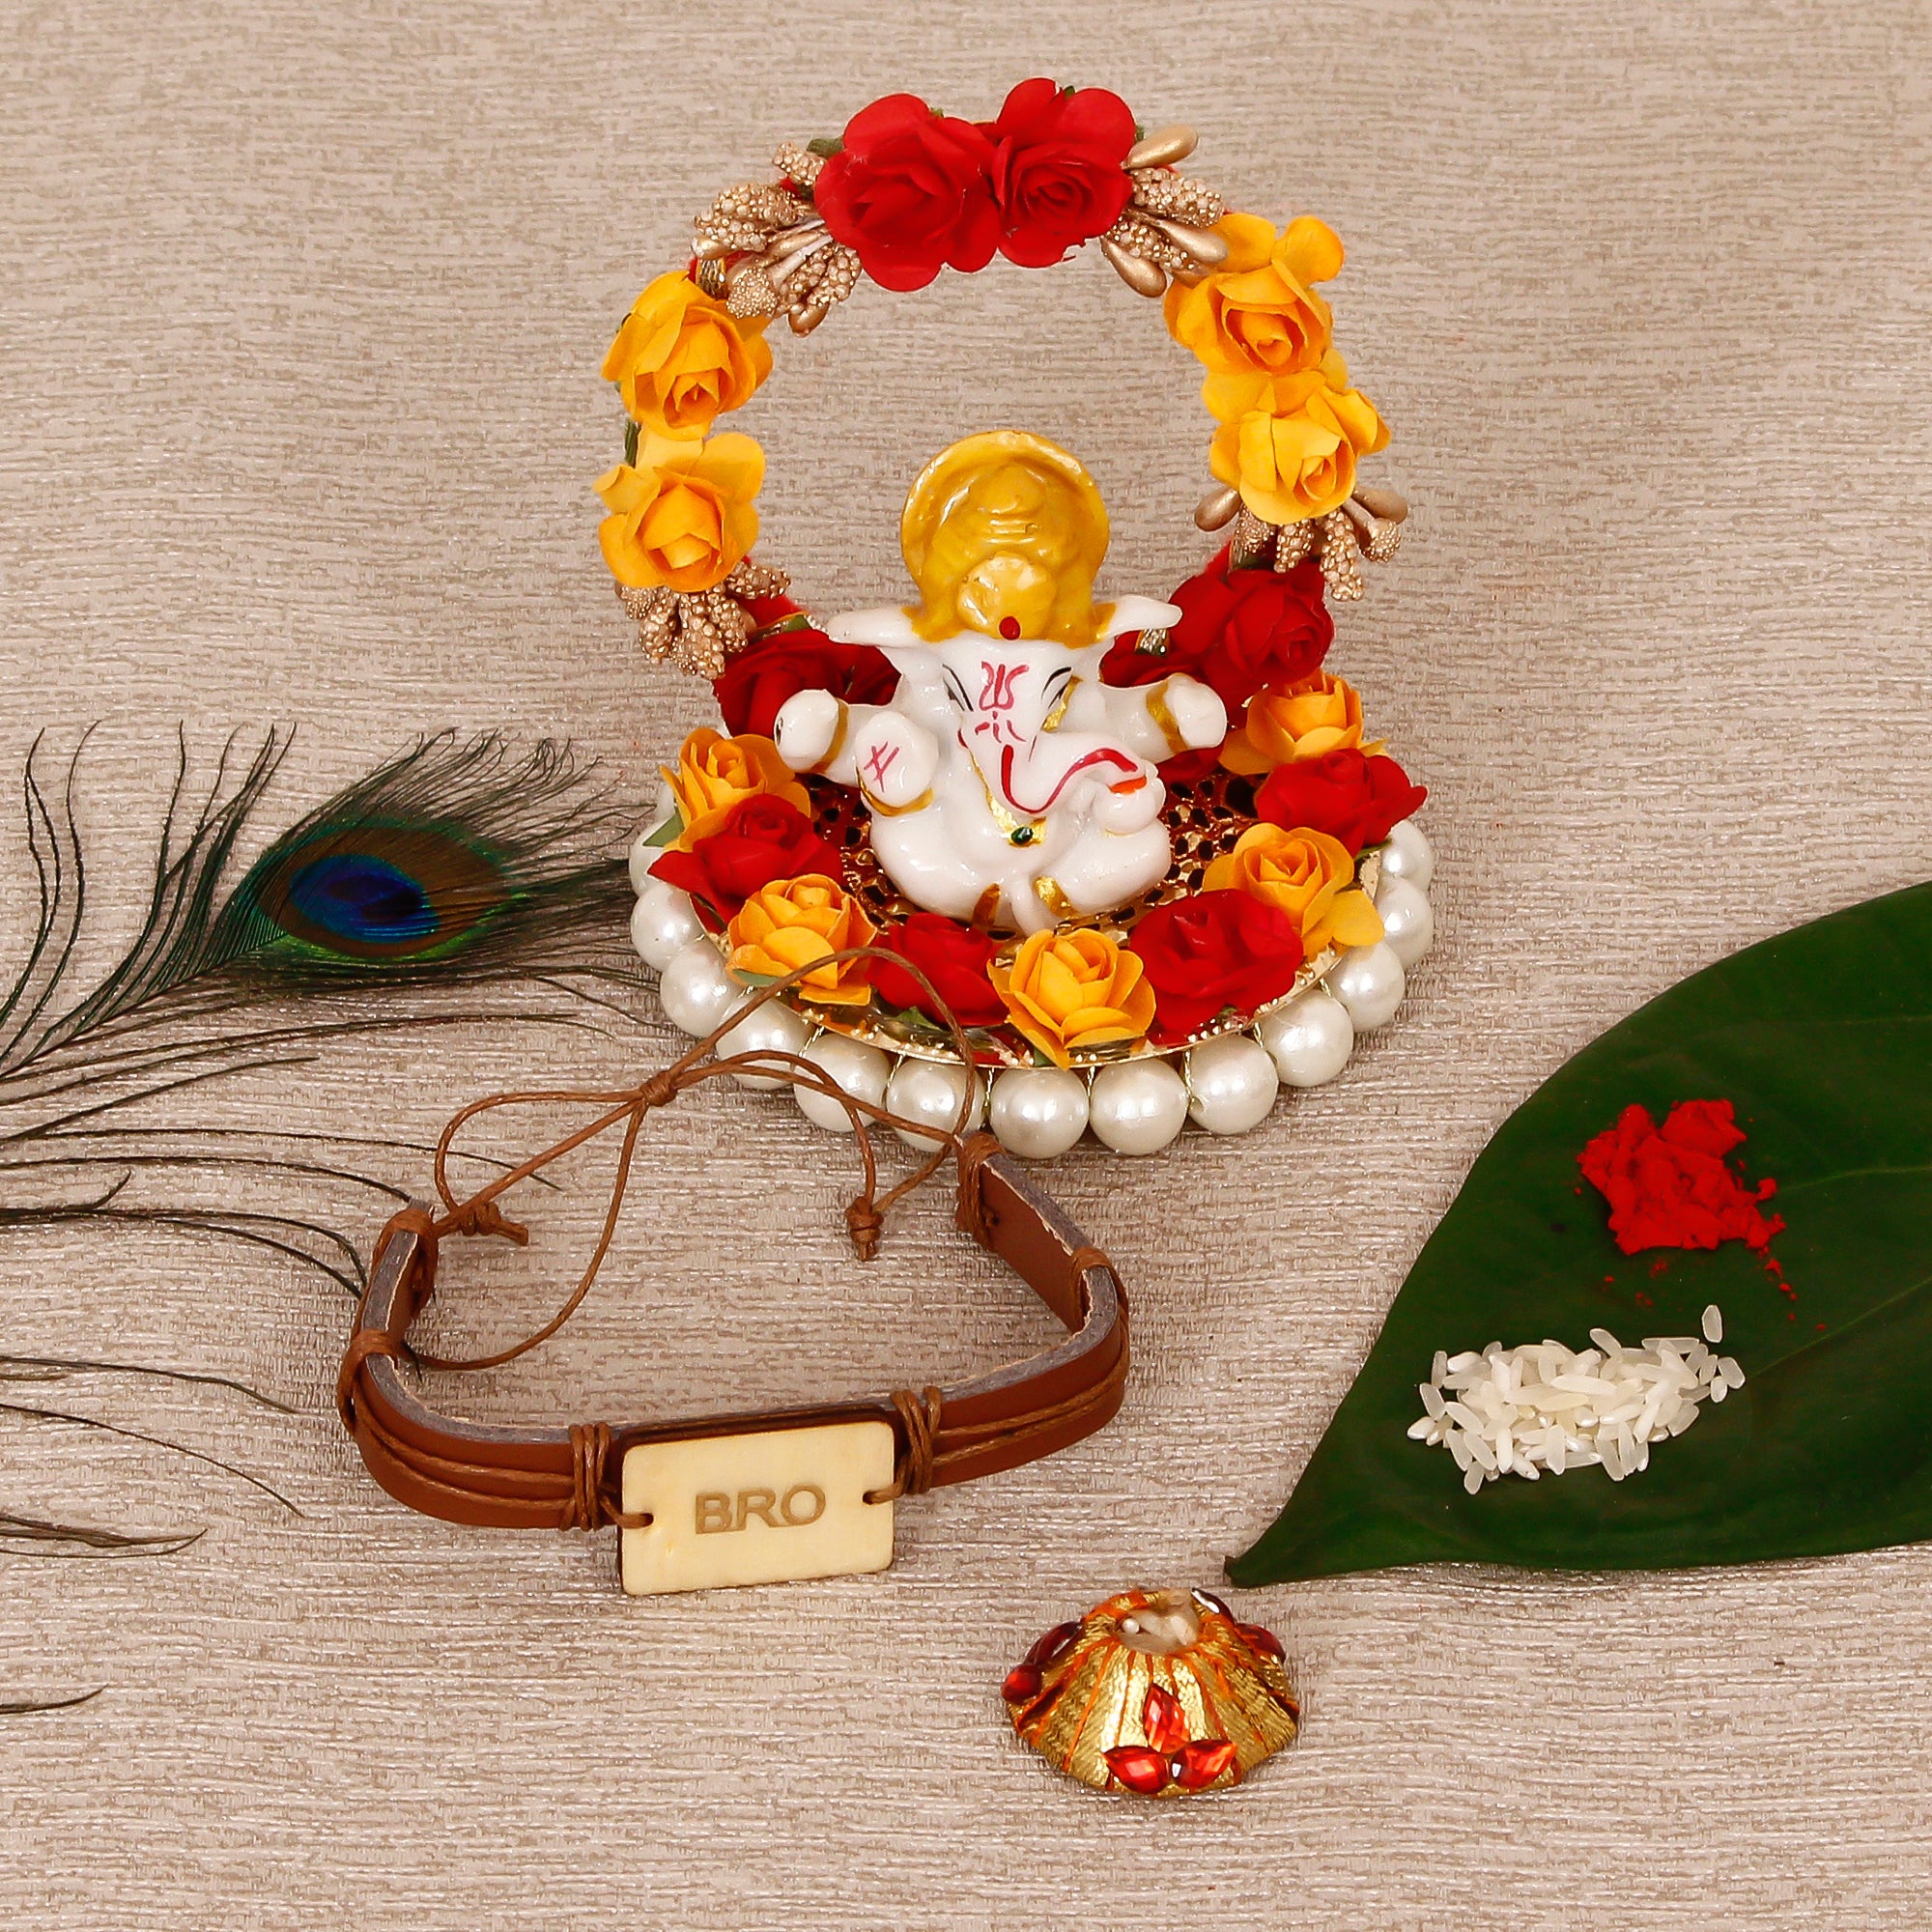 Designer Leather Bracelet BRO Rakhi with Lord Ganesha Idol on Decorative Plate for Car & Home and Roli Tikka Matki